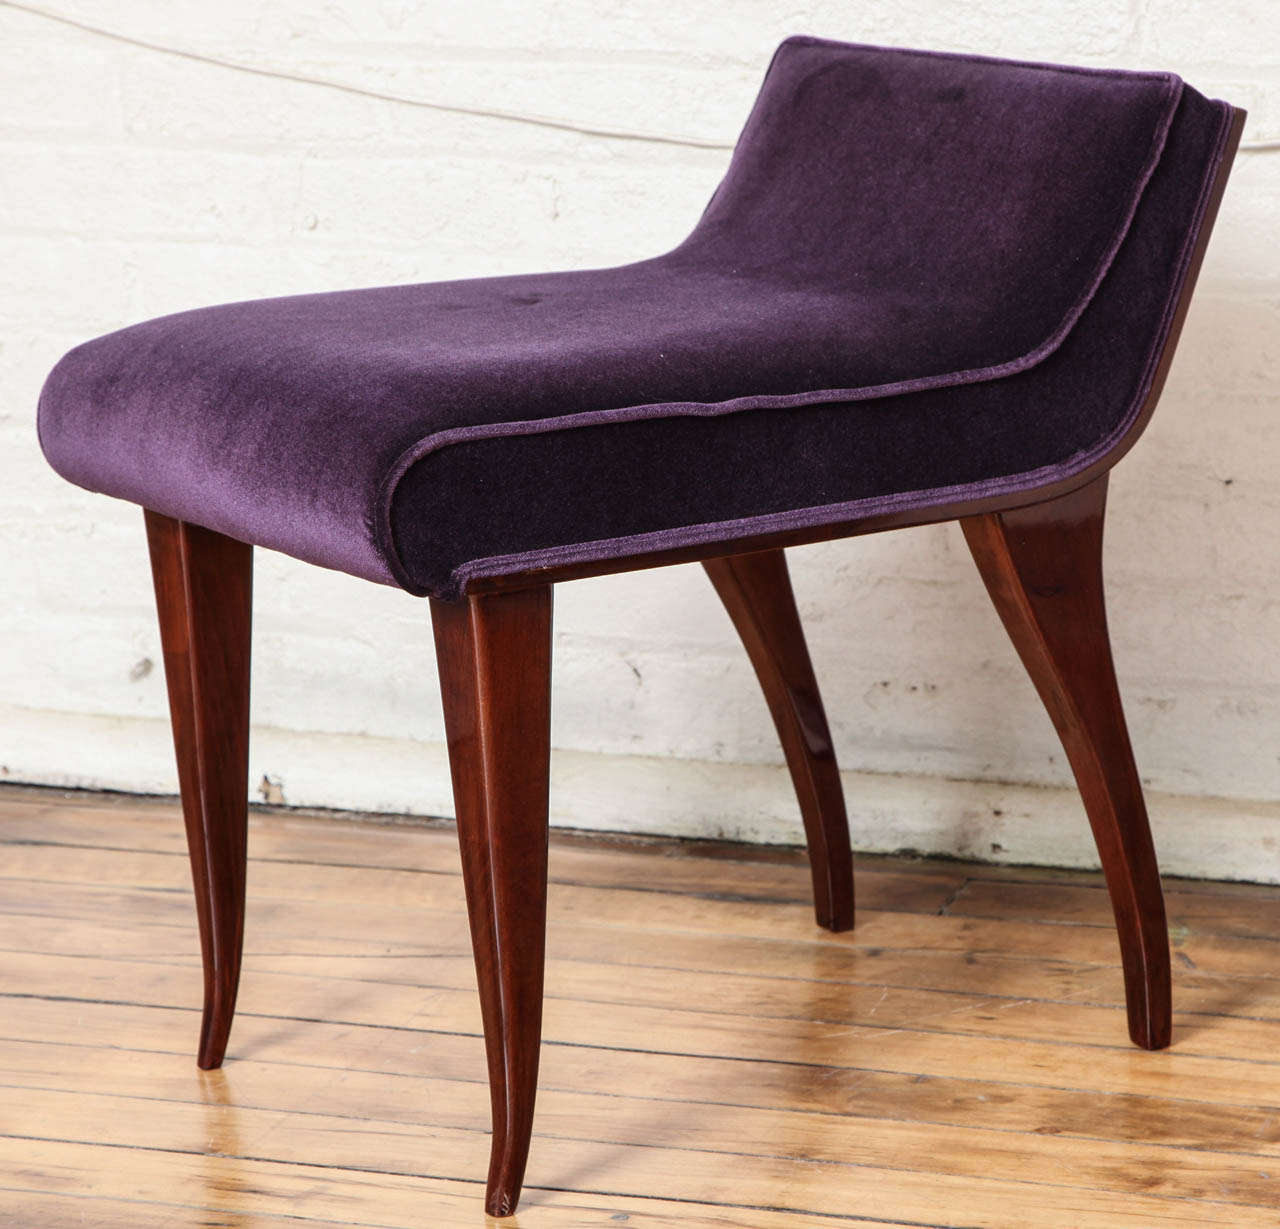 Chic art deco setee / vanity chair in the manner of Alfred De Portneuve. Walnut and aubergine silk velvet upholstery.